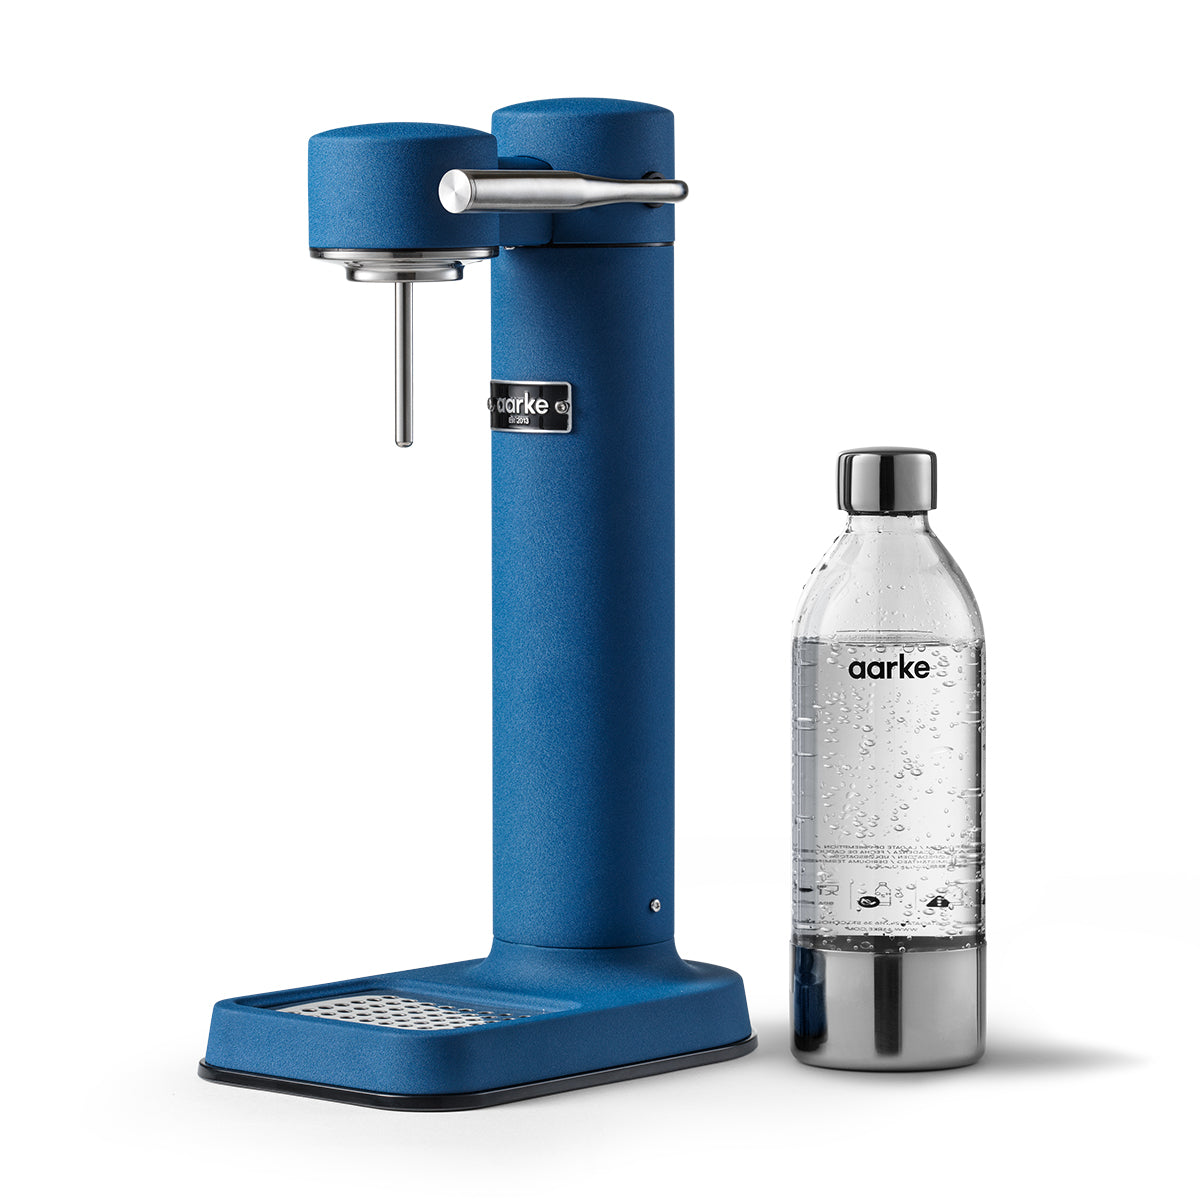 Aarke Carbonator 3 Sparkling Water Maker – Cobalt